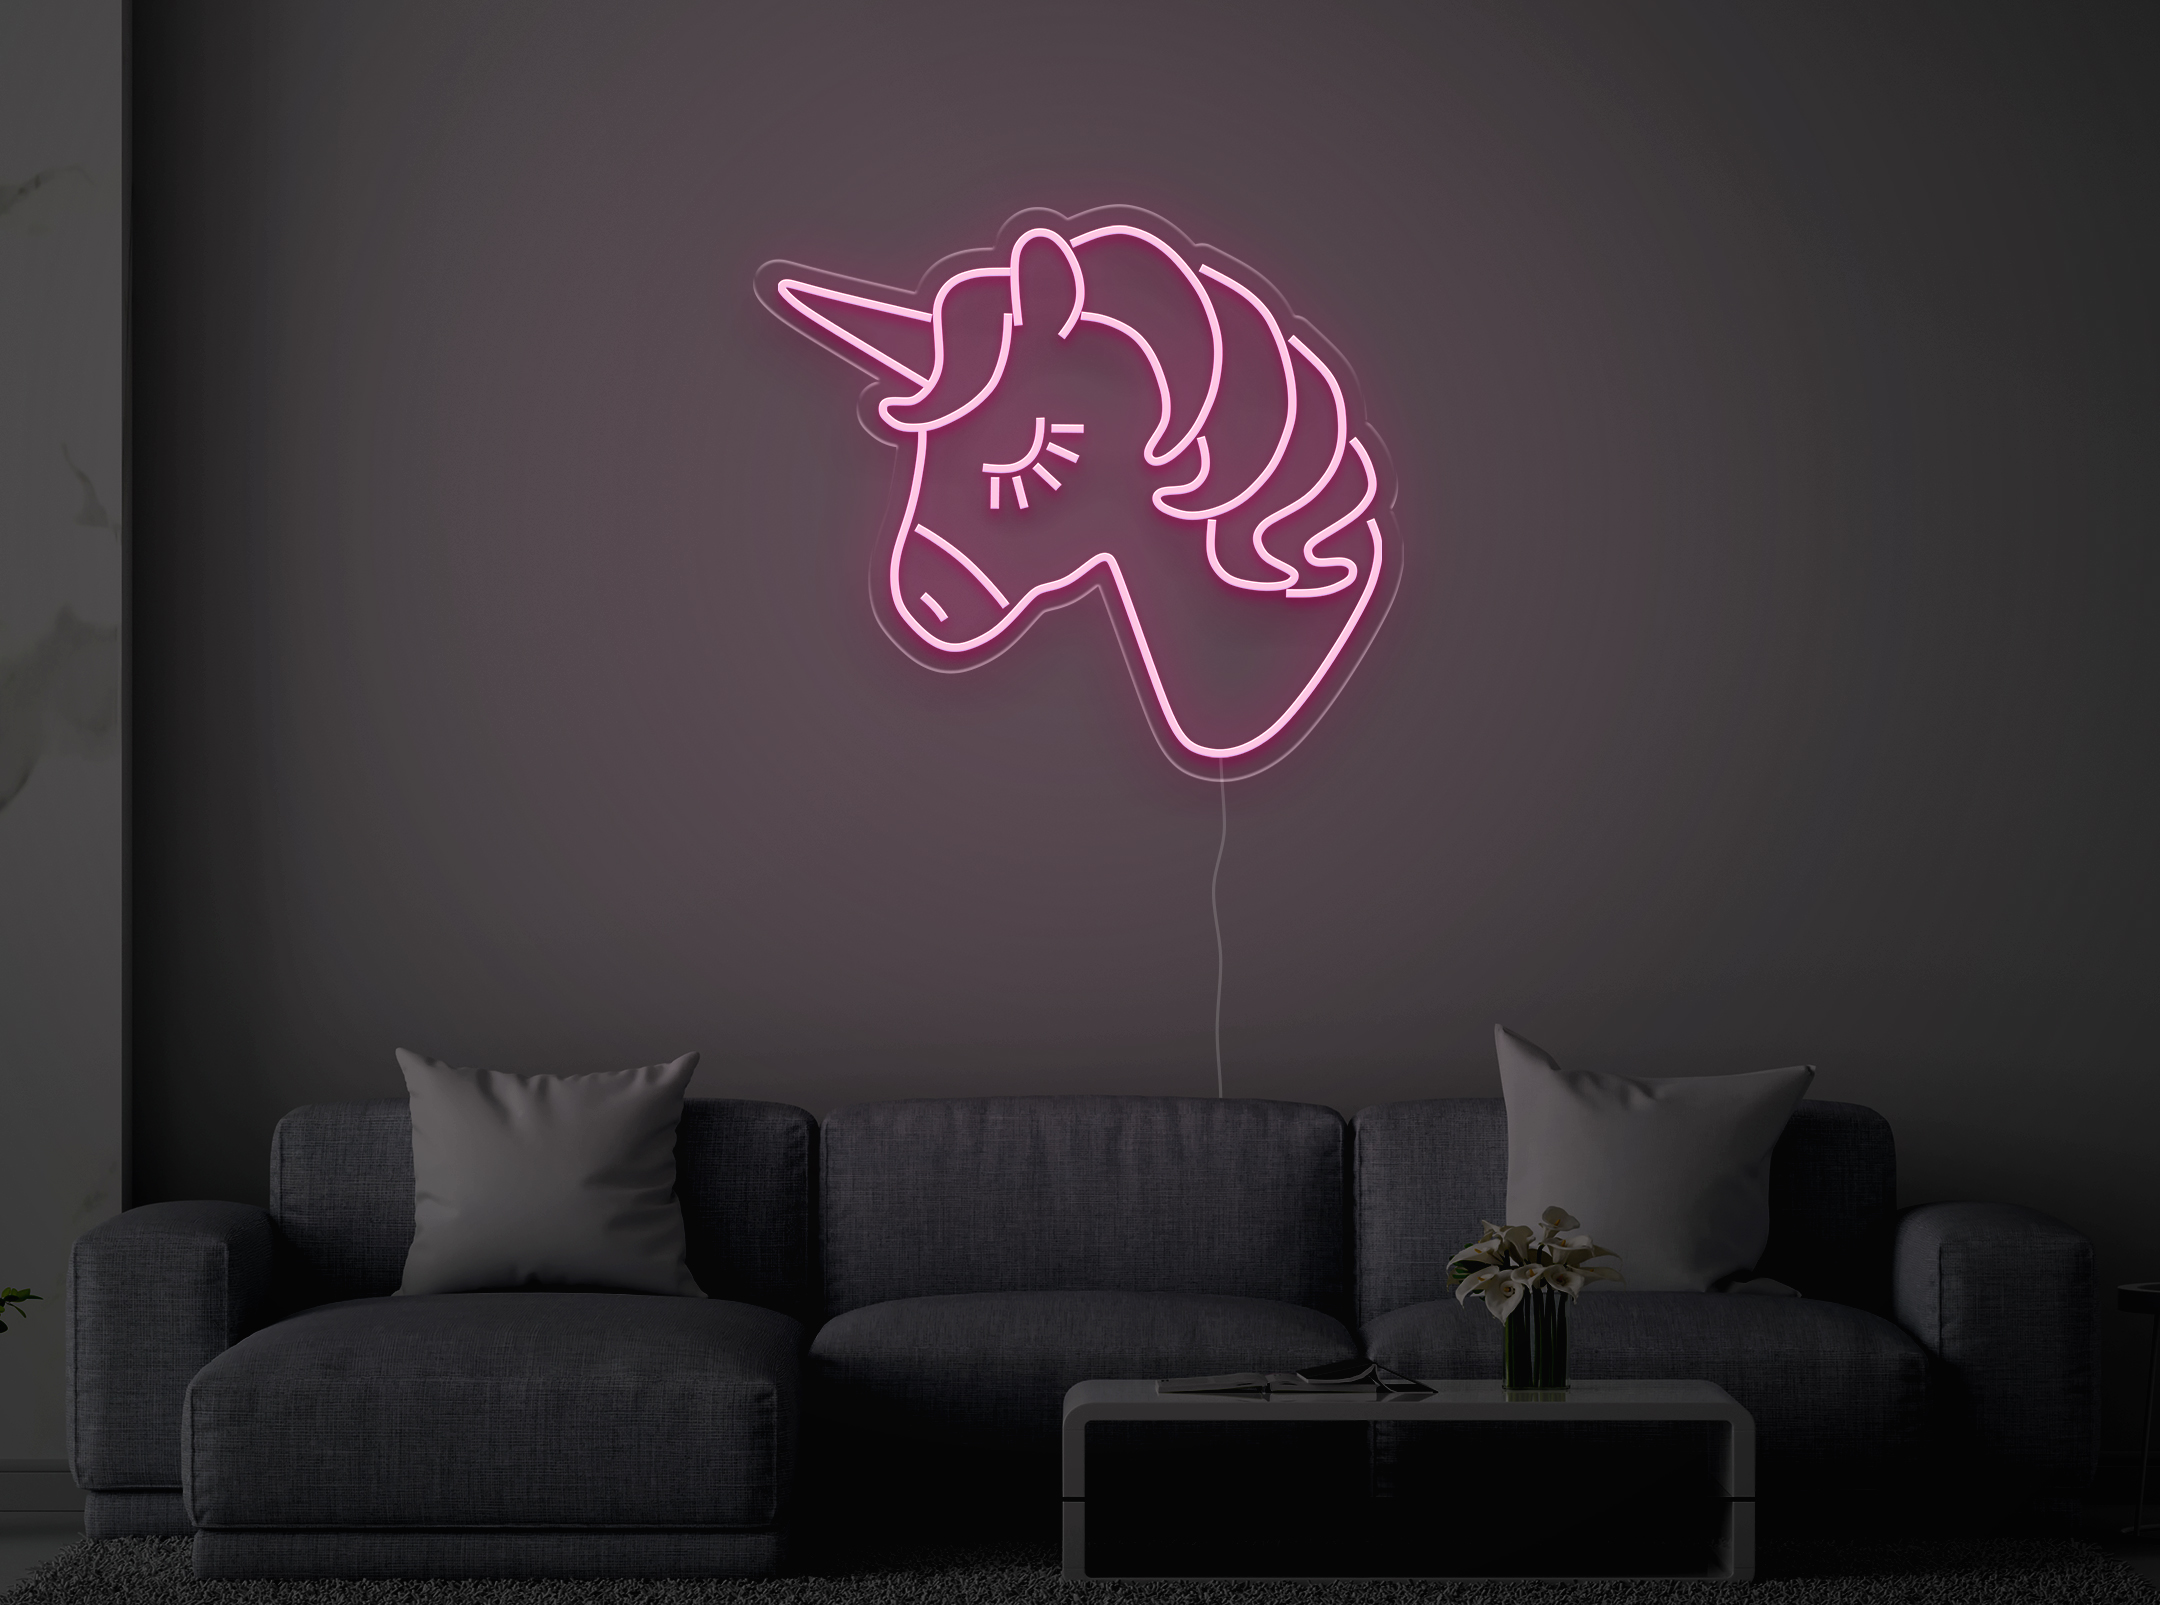 Licorne - Signe lumineux au neon LED